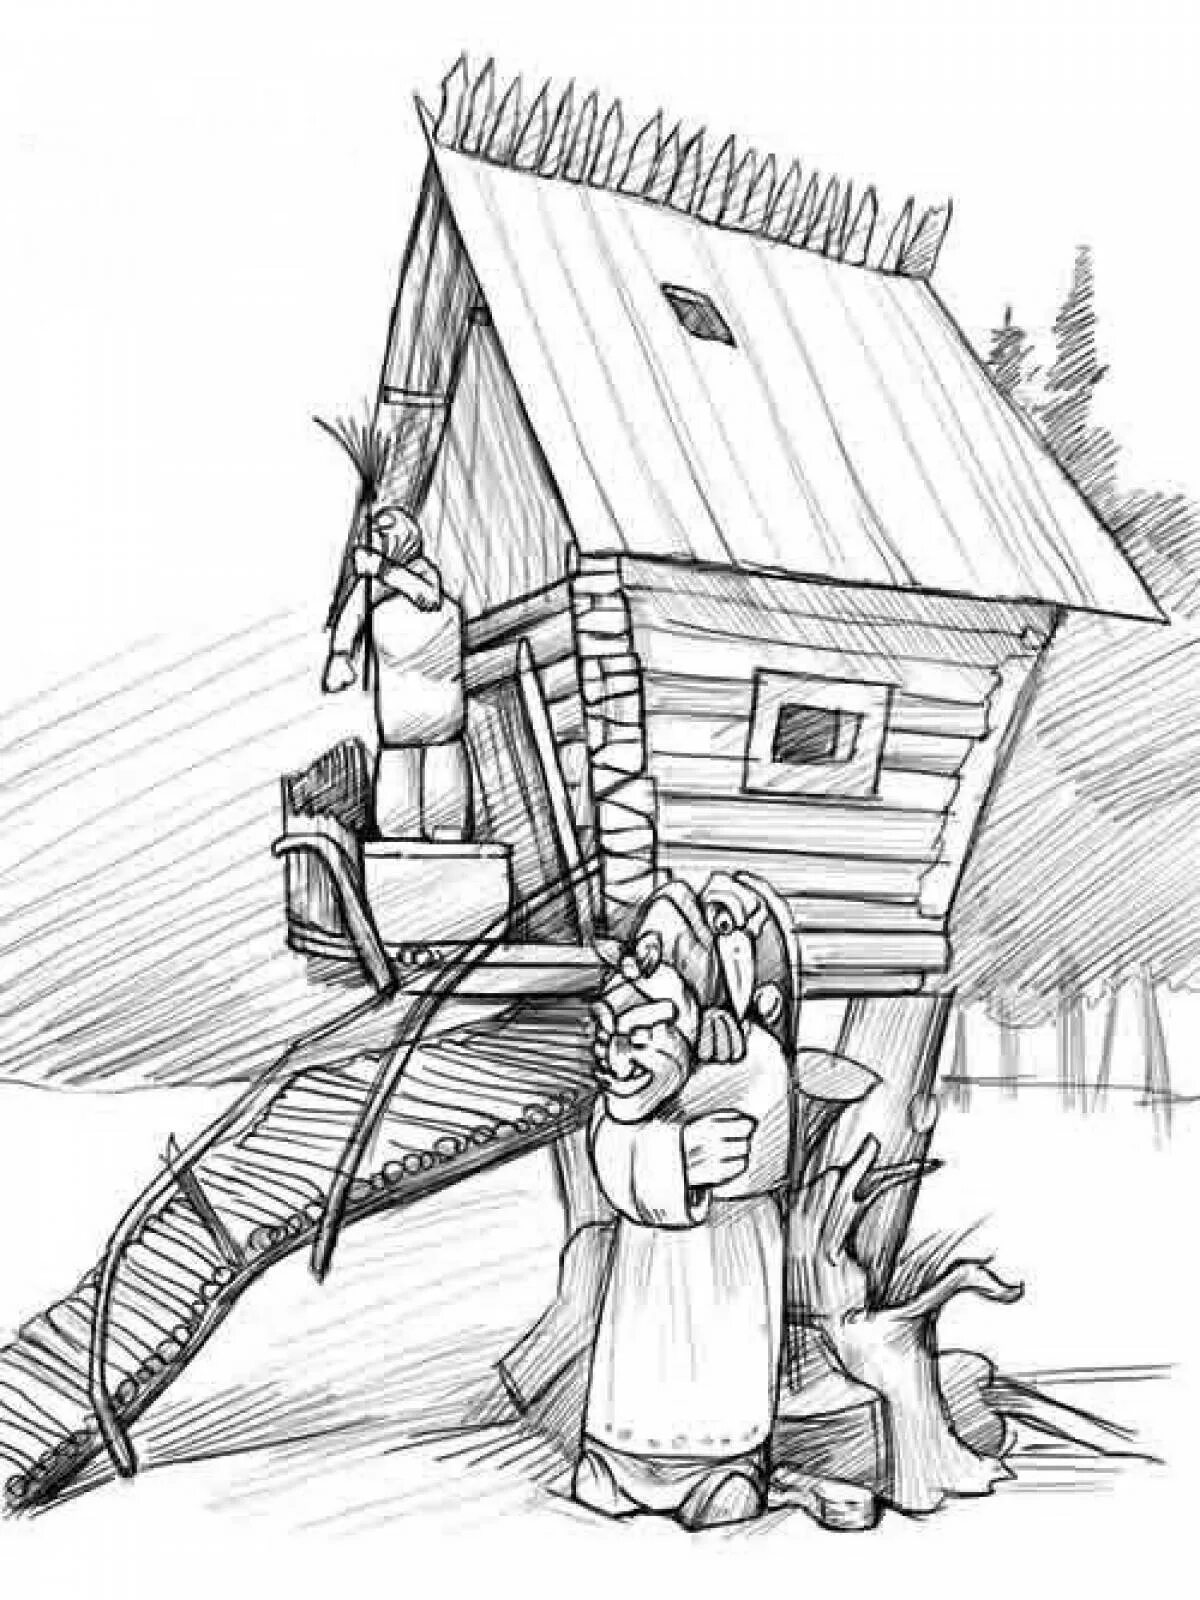 Иллюстрация к стихотворению Бальмонта у чудищ. Дом на курьих ножках раскраска. Избушка на курьих ножках раскраска. Избушка на курьих ножках рисунок карандашом.